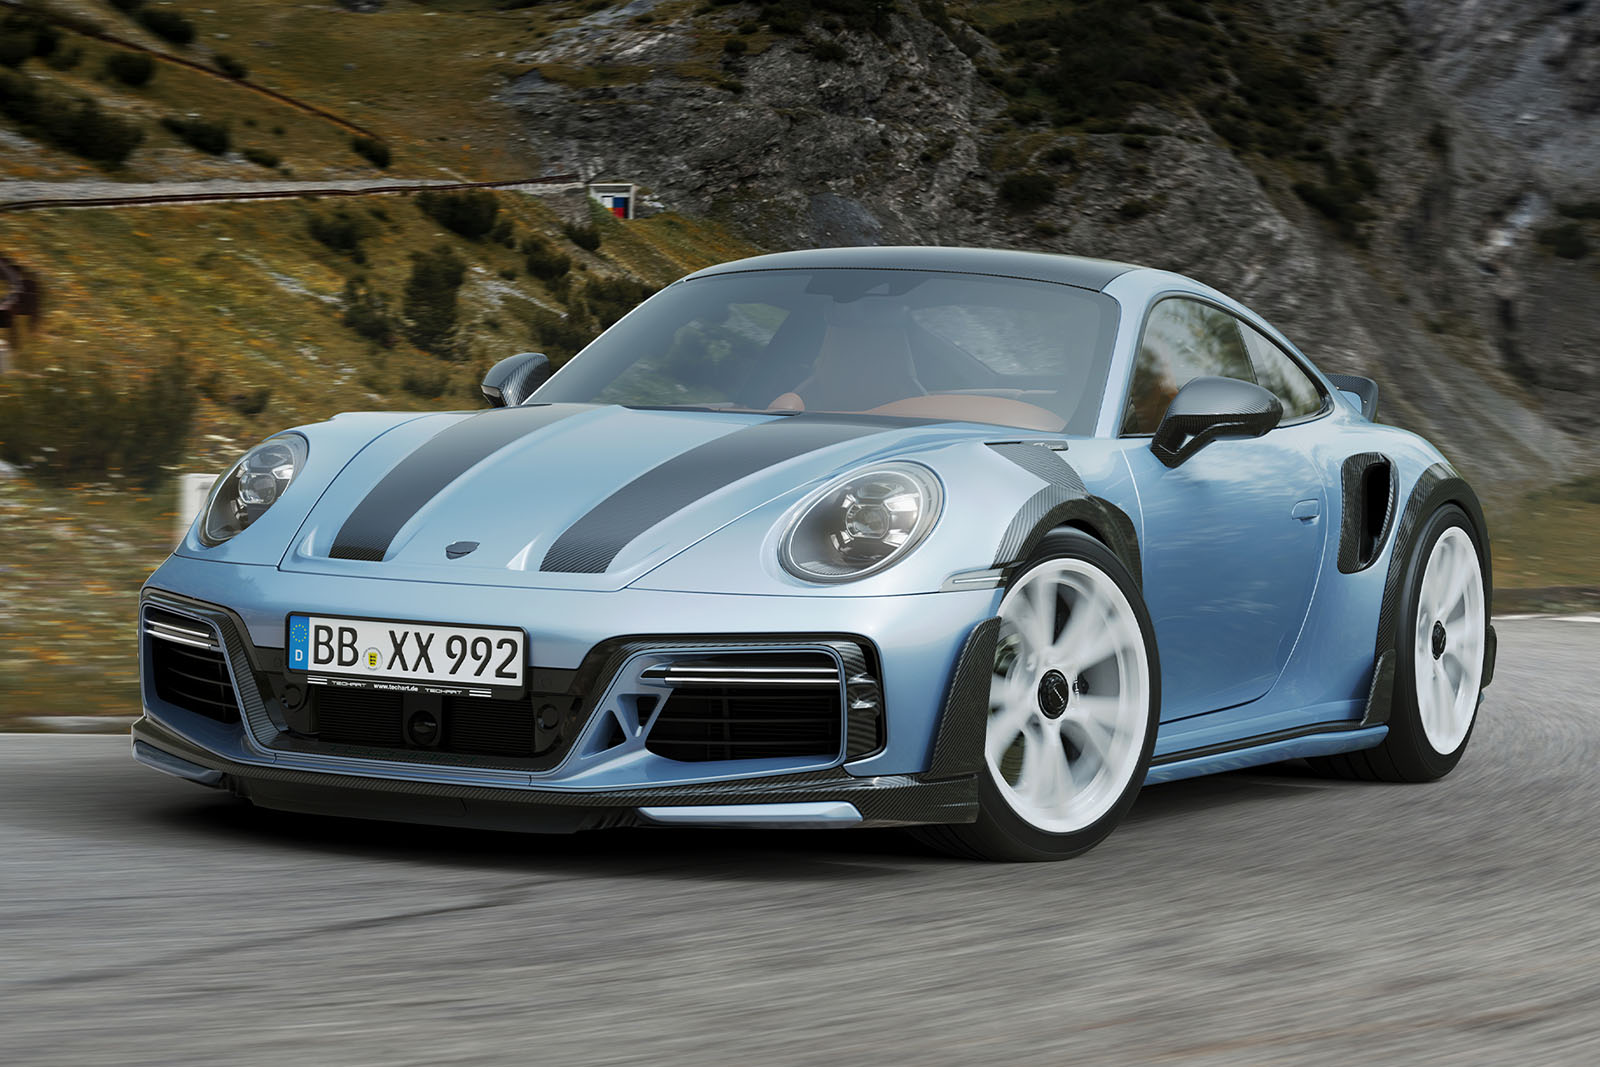 Das deutsche Tuningunternehmen Techart verleiht dem Porsche 911 Turbo S eine Leistung von bis zu 789 PS